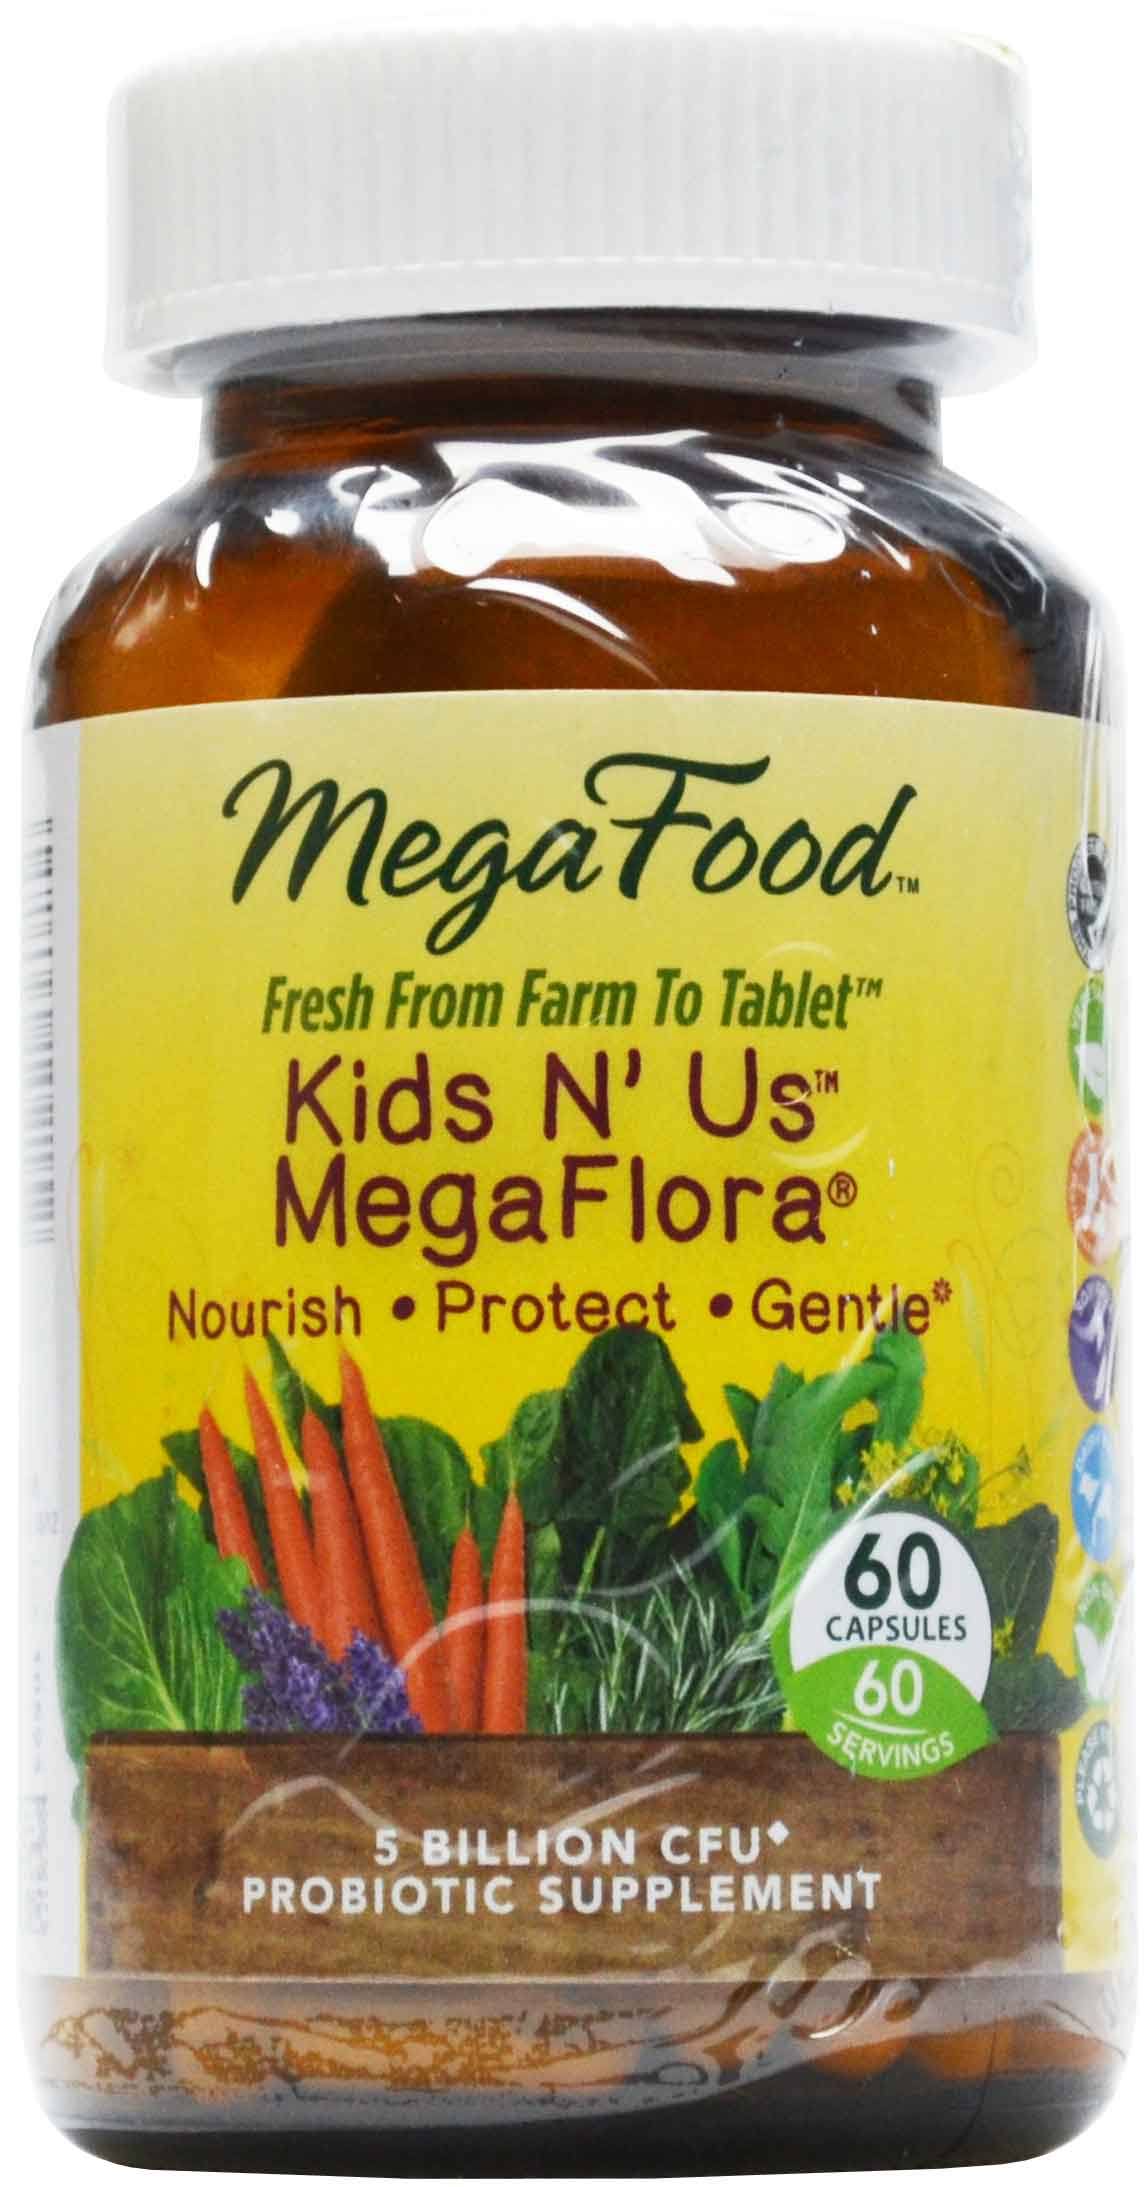 Megafood Kids N' Us Megaflora - 60 Capsules